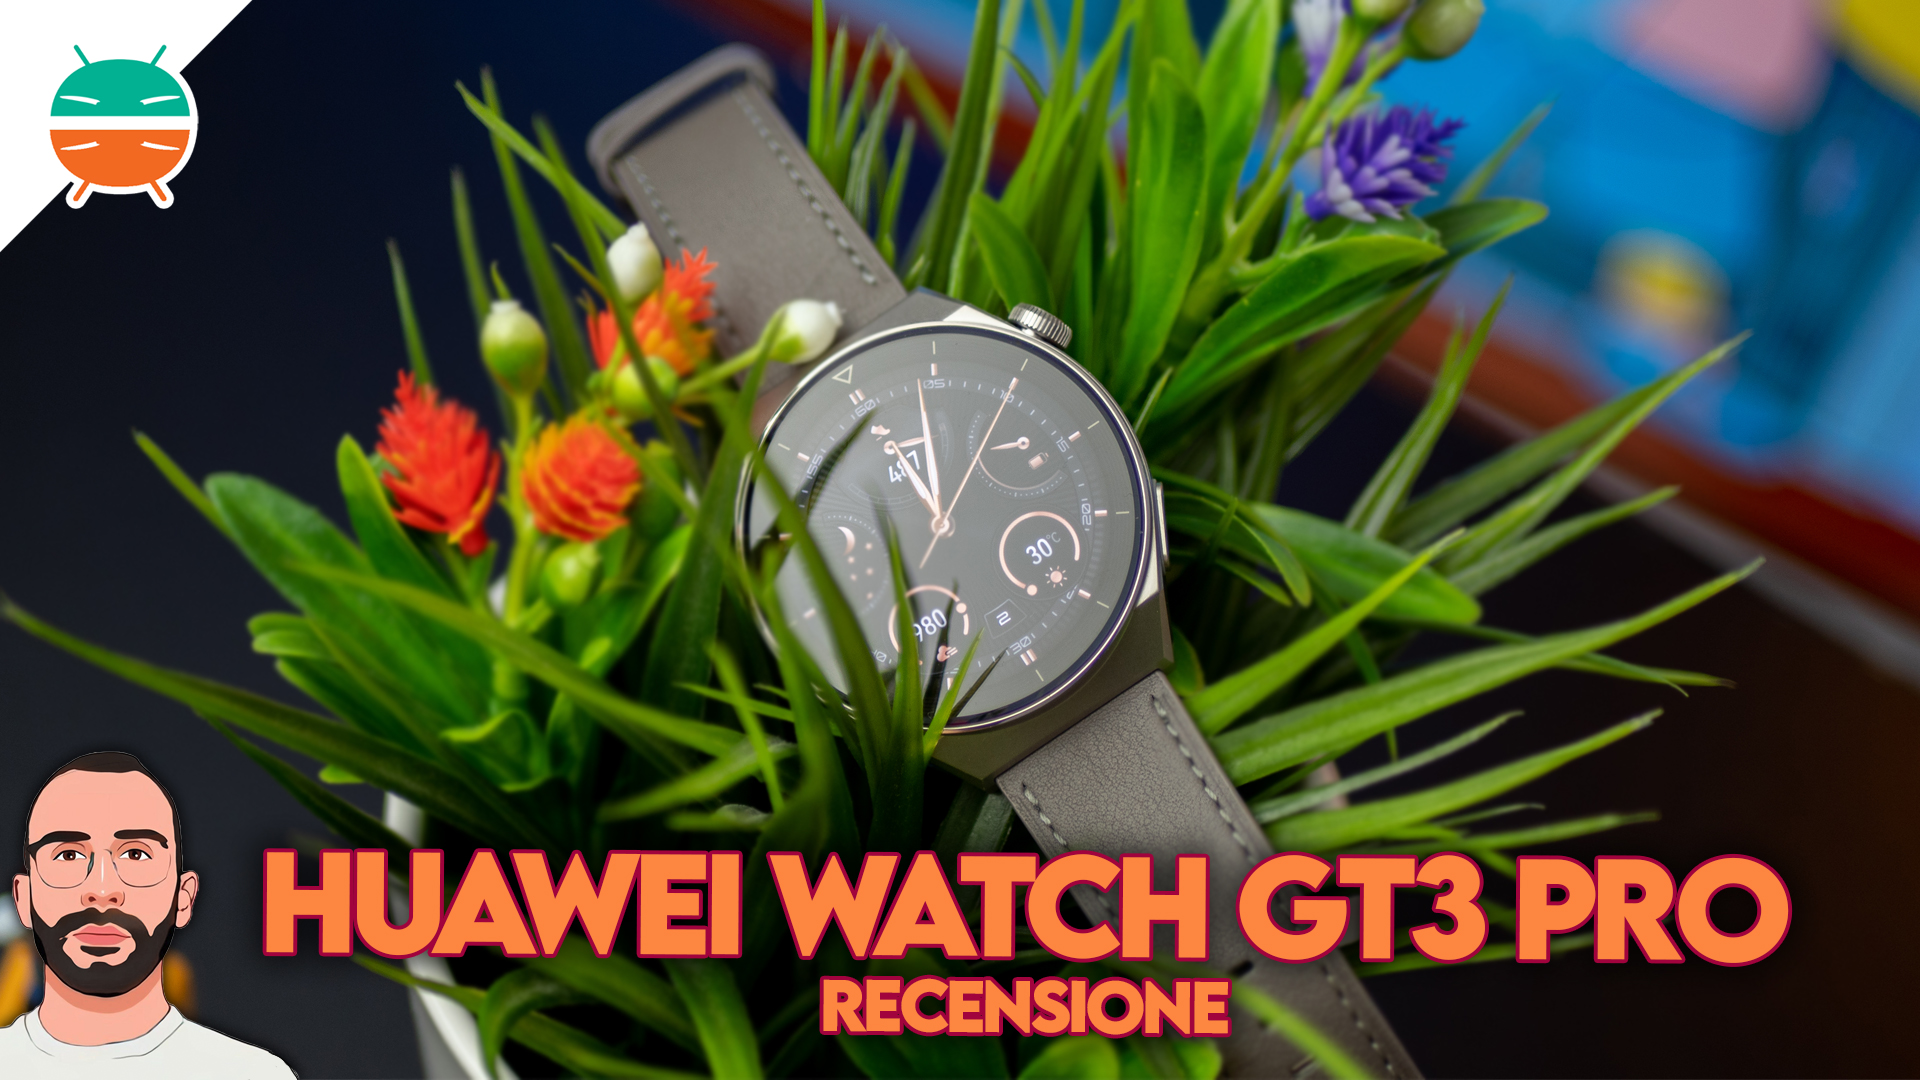 Recensione Huawei Watch GT 3 PRO: la conferma del fatto che Huawei NON SCHERZA! - GizChina.it